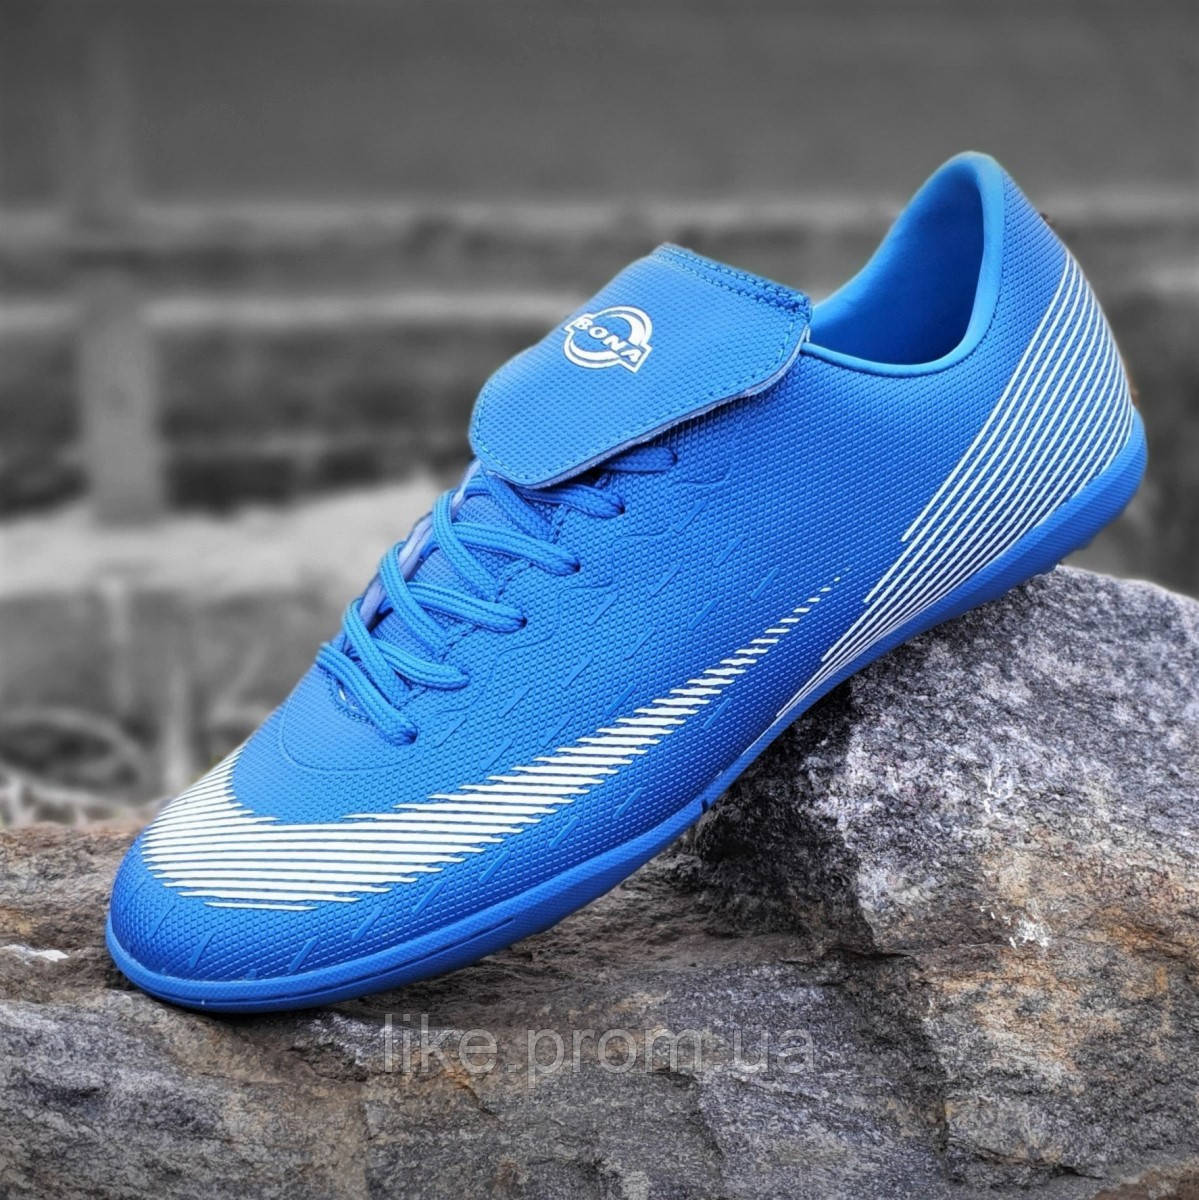 

Мужские сороконожки Mercurial, бампы, кроссовки для футбола синие, футбольная обувь, легкие (Код: Л1403), Синий